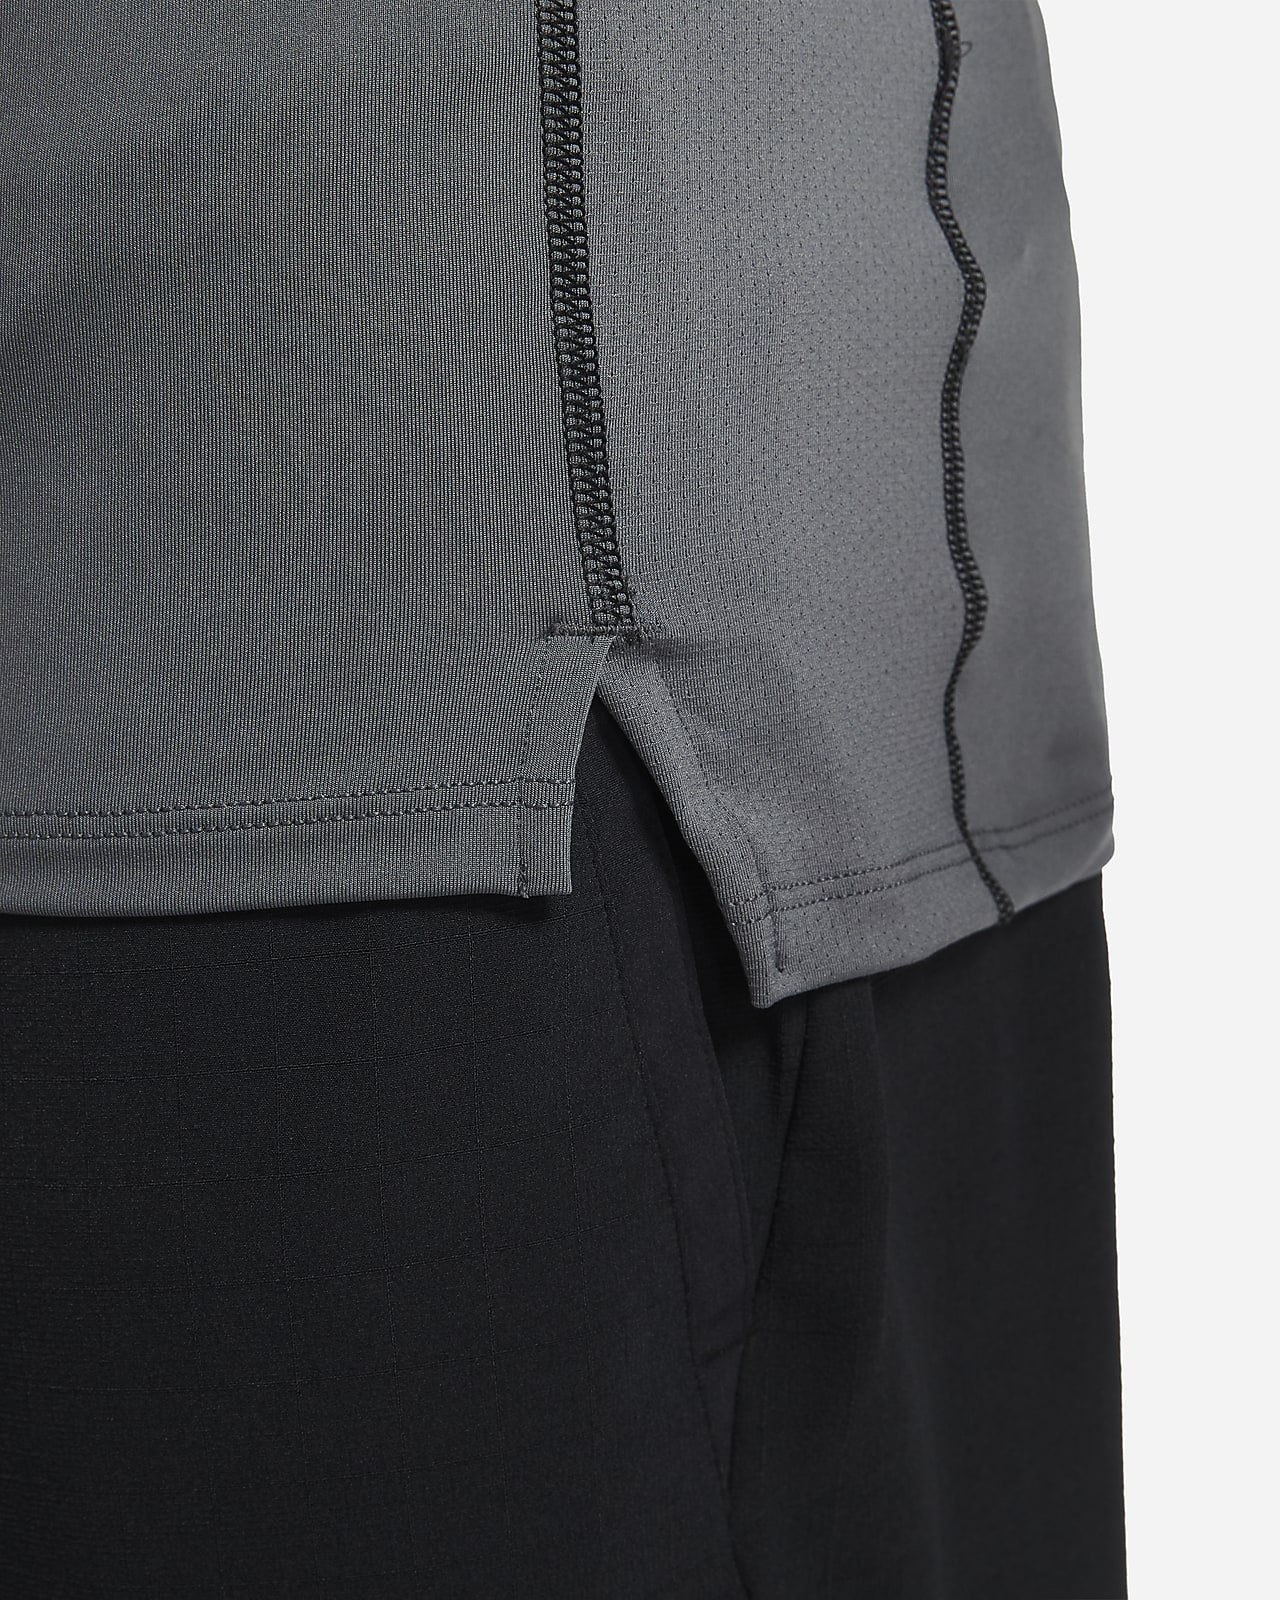 Nike Pro Men's Dri-Fit Slim Fit Short-Sleeve Top, Large, Black